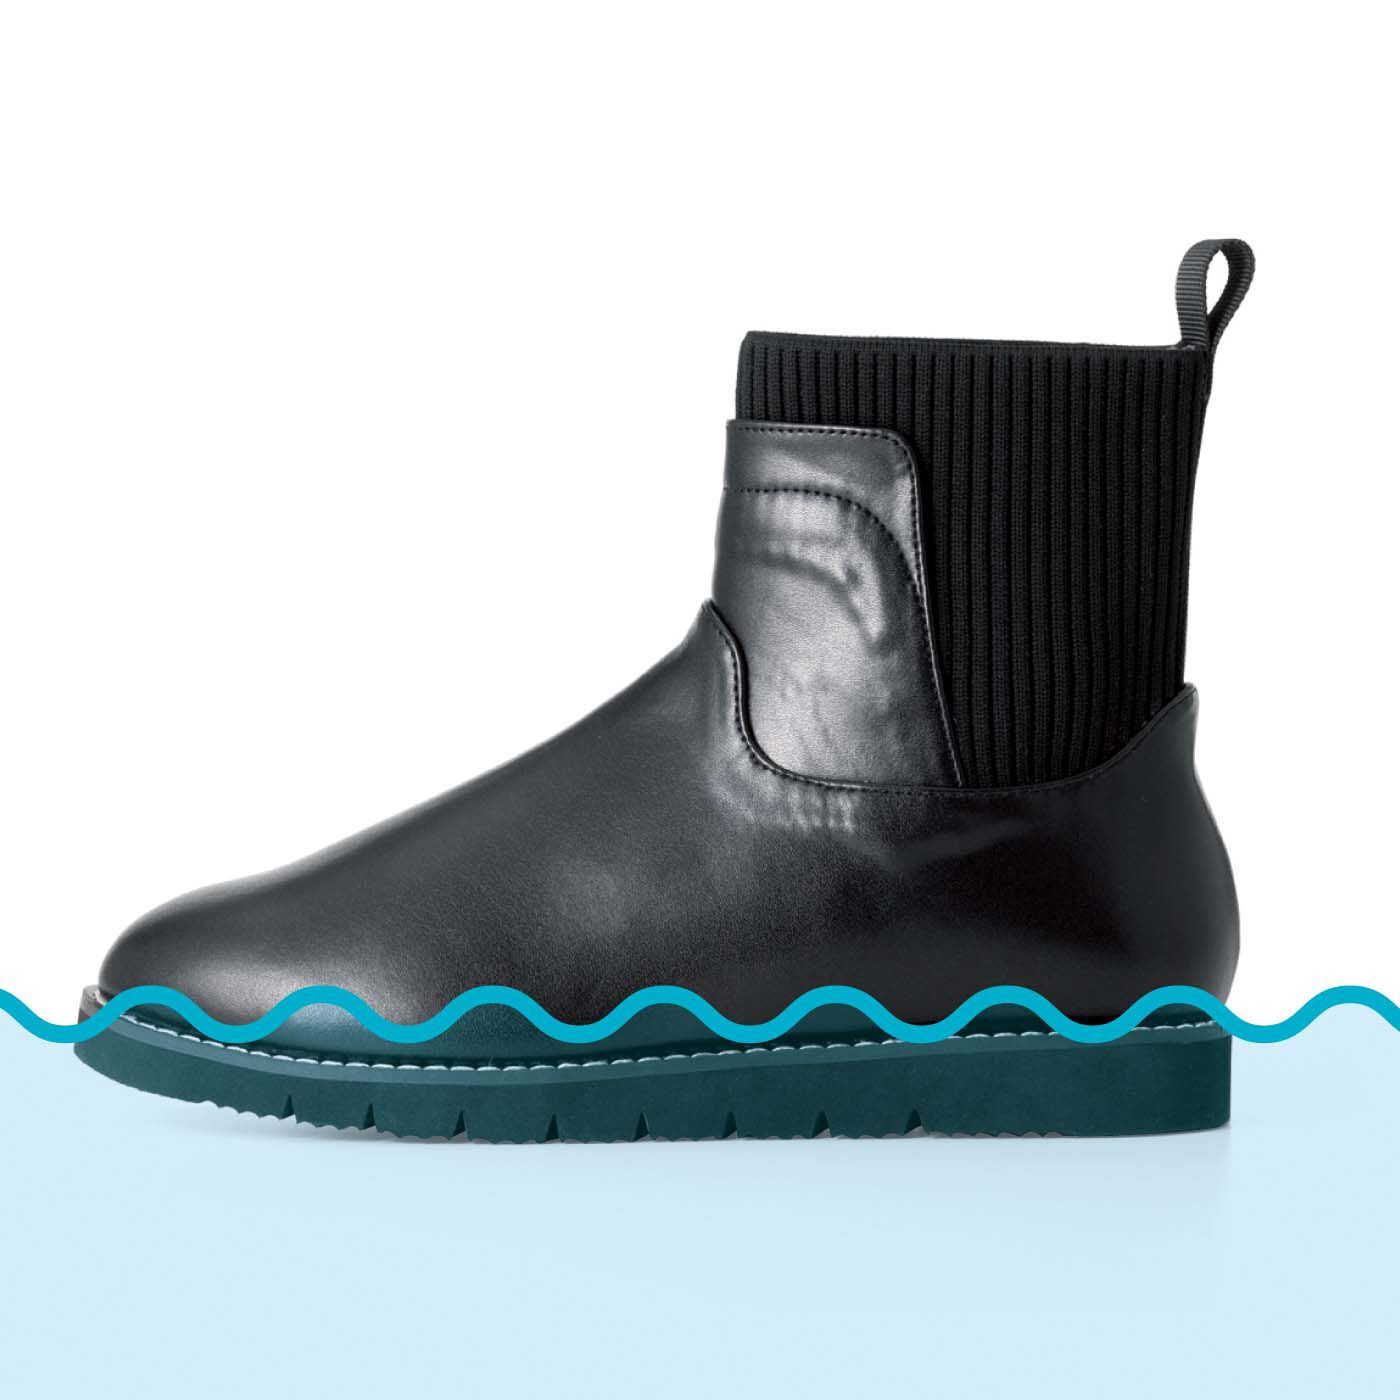 Real Stock|UP.de　きちんと見えるのにするんと履ける らくちんニット遣いの防水仕様ブーツ|【生活防水仕様】 多少の雨でも水ぬれを気にせず履けます。